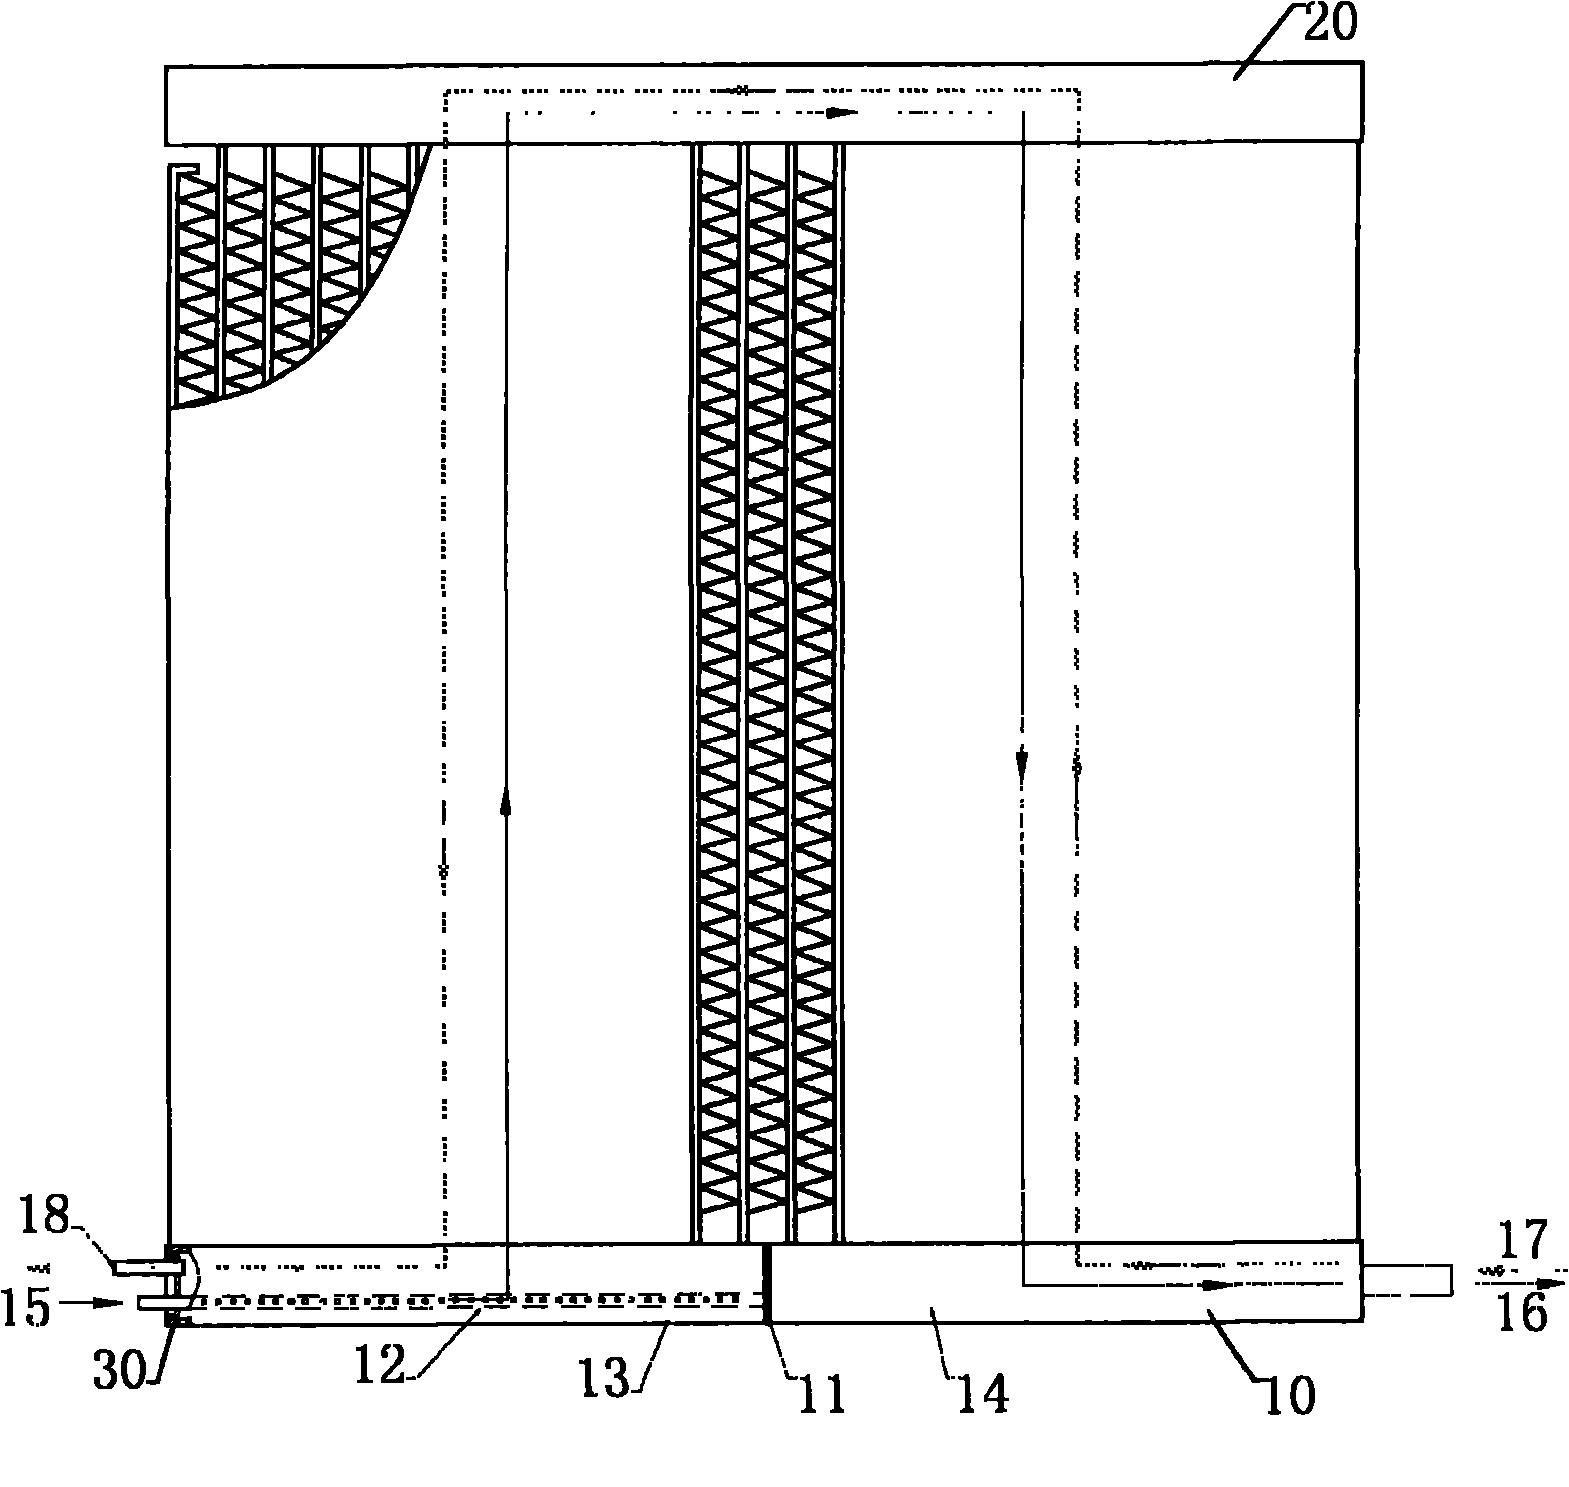 Loop structure of bidirectional microchannel heat exchanger